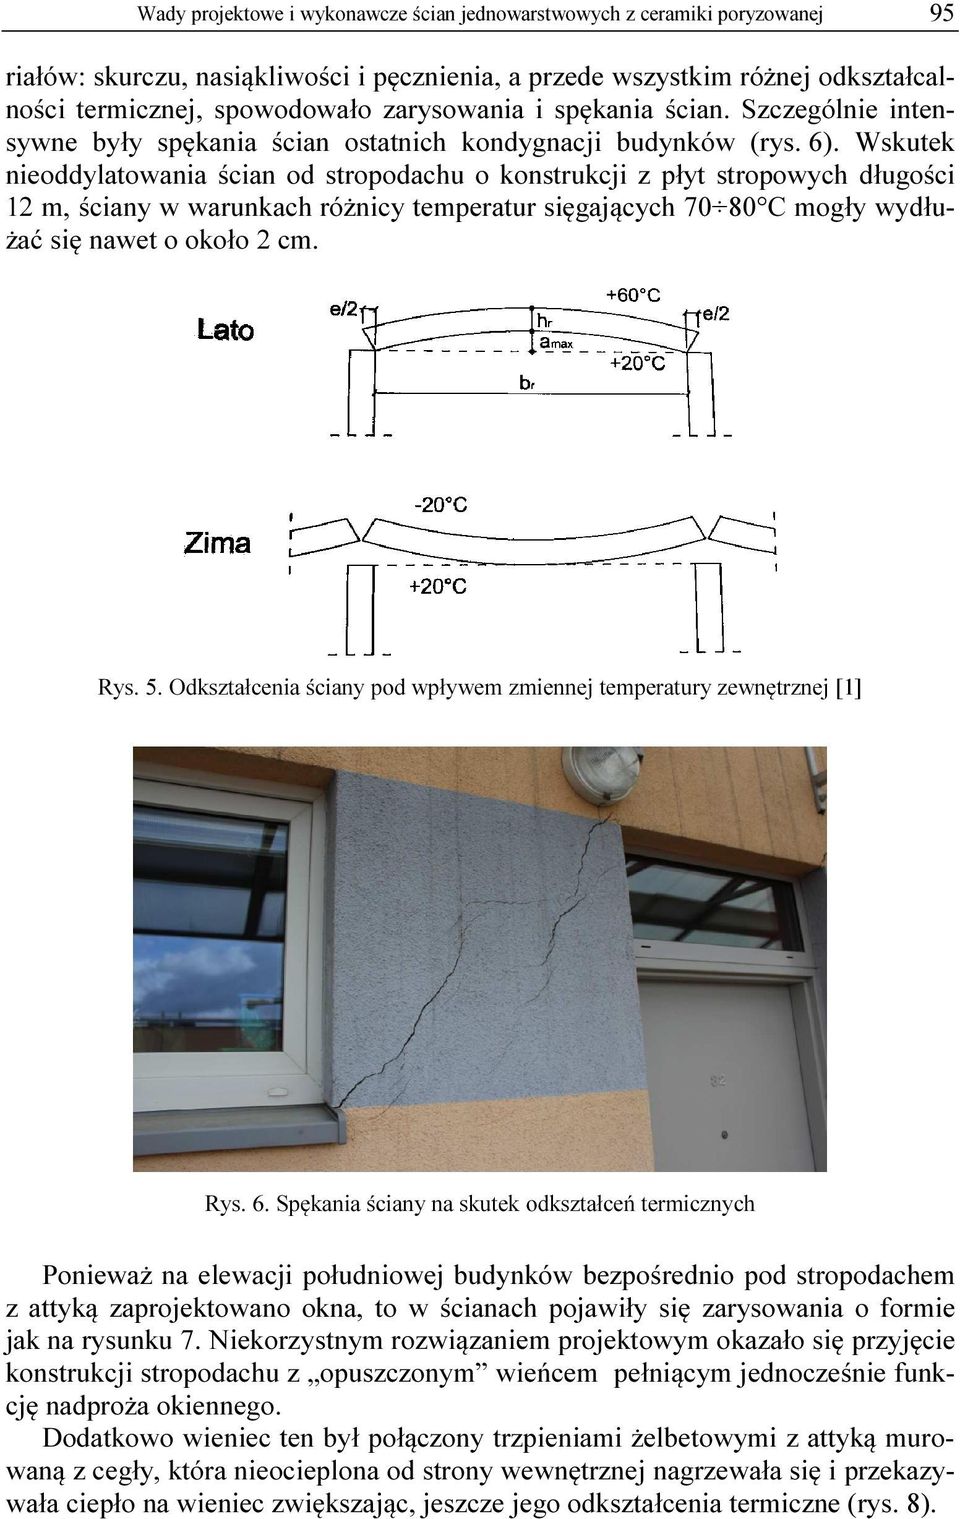 Wskutek nieoddylatowania ścian od stropodachu o konstrukcji z płyt stropowych długości 12 m, ściany w warunkach różnicy temperatur sięgających 70 80 C mogły wydłużać się nawet o około 2 cm. Rys. 5.